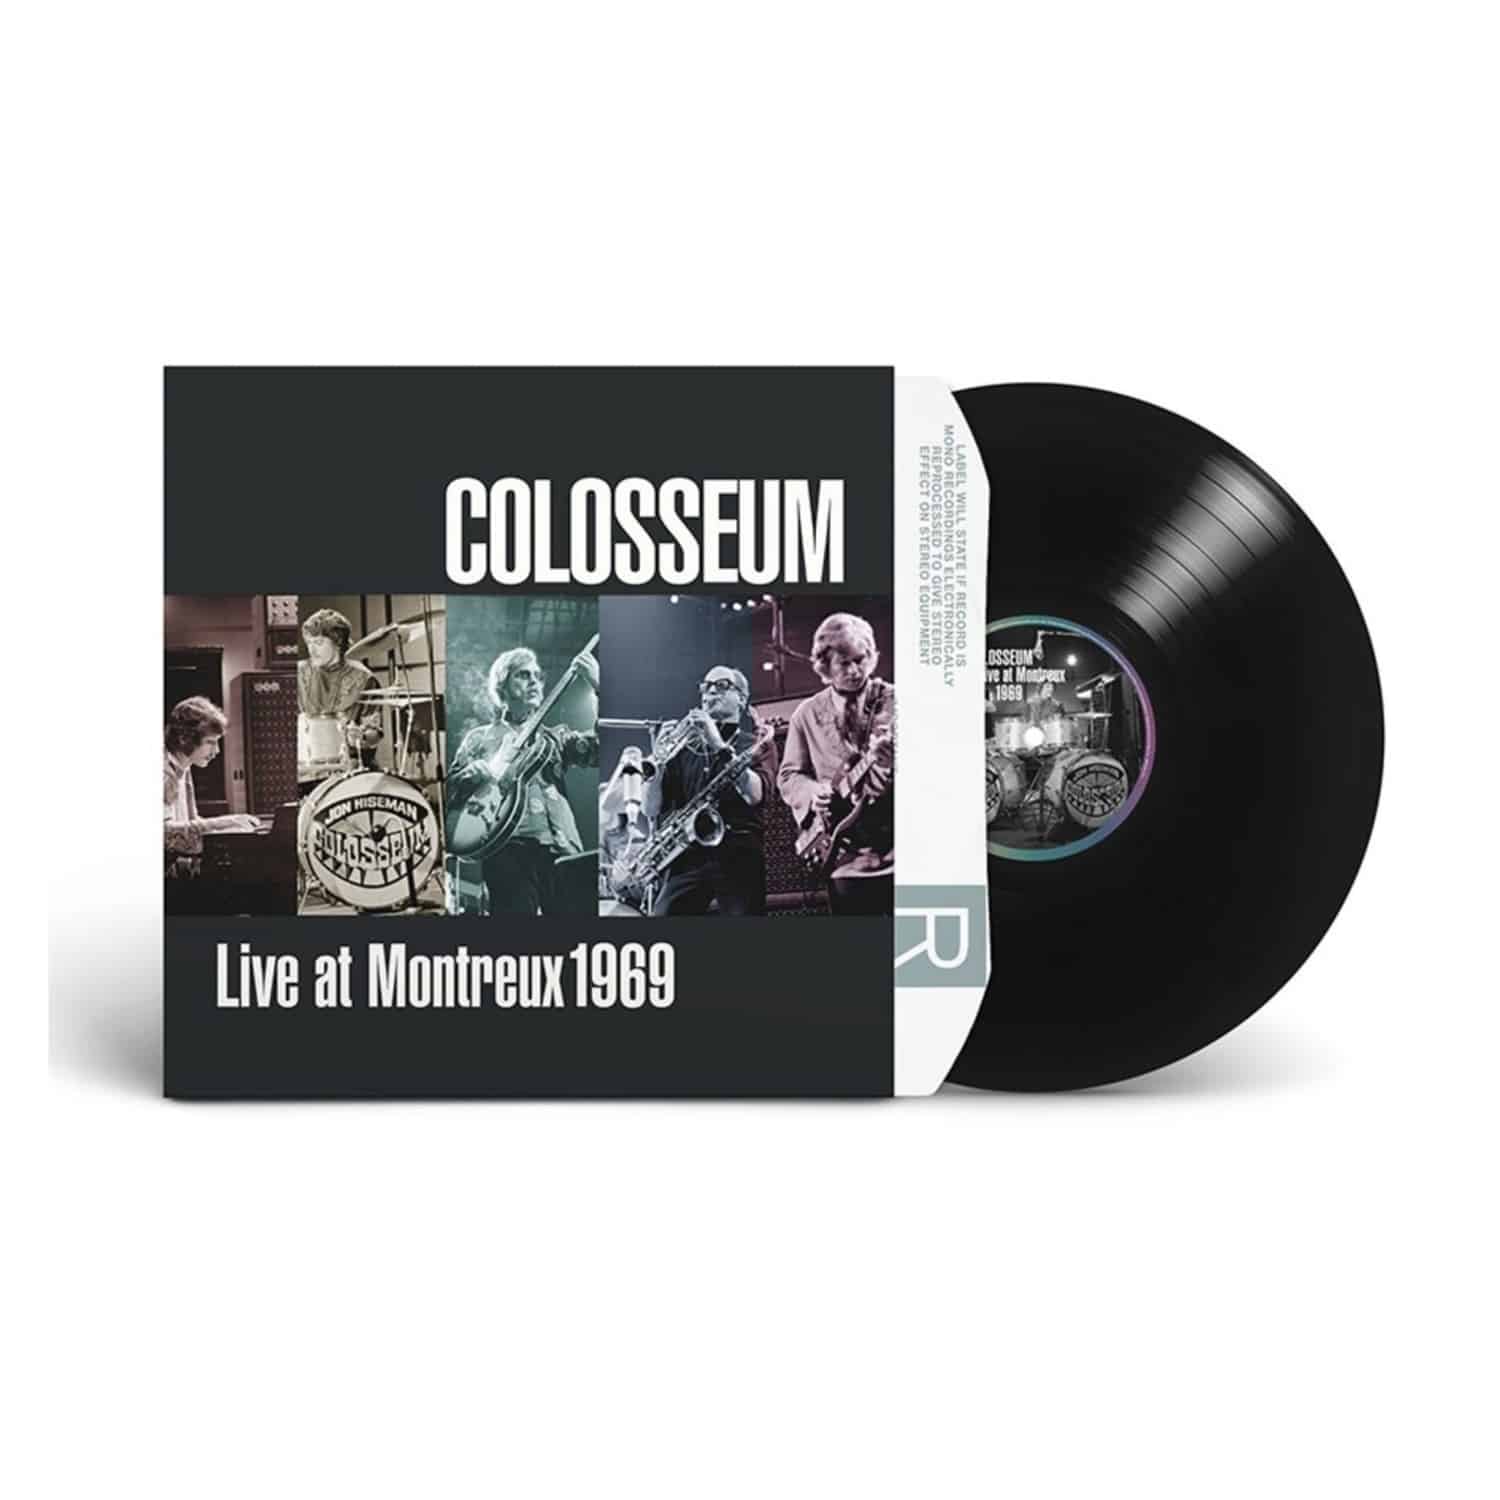 Colosseum - LIVE AT MONTREUX 1969 